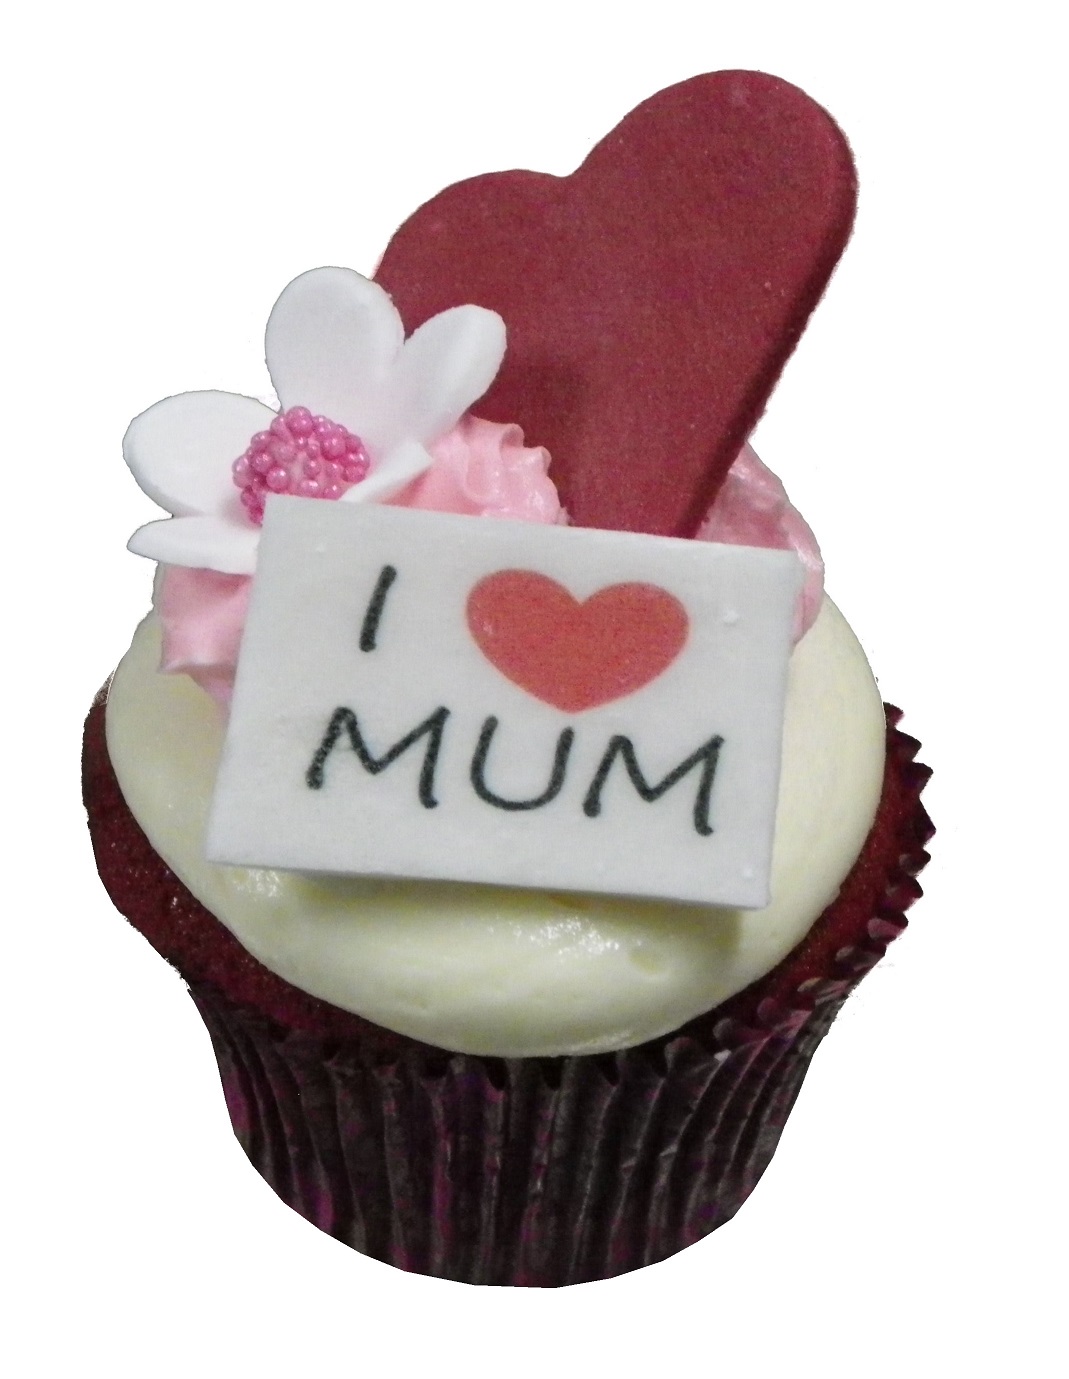 Mothers Day "I love you Mum" Red Velvet